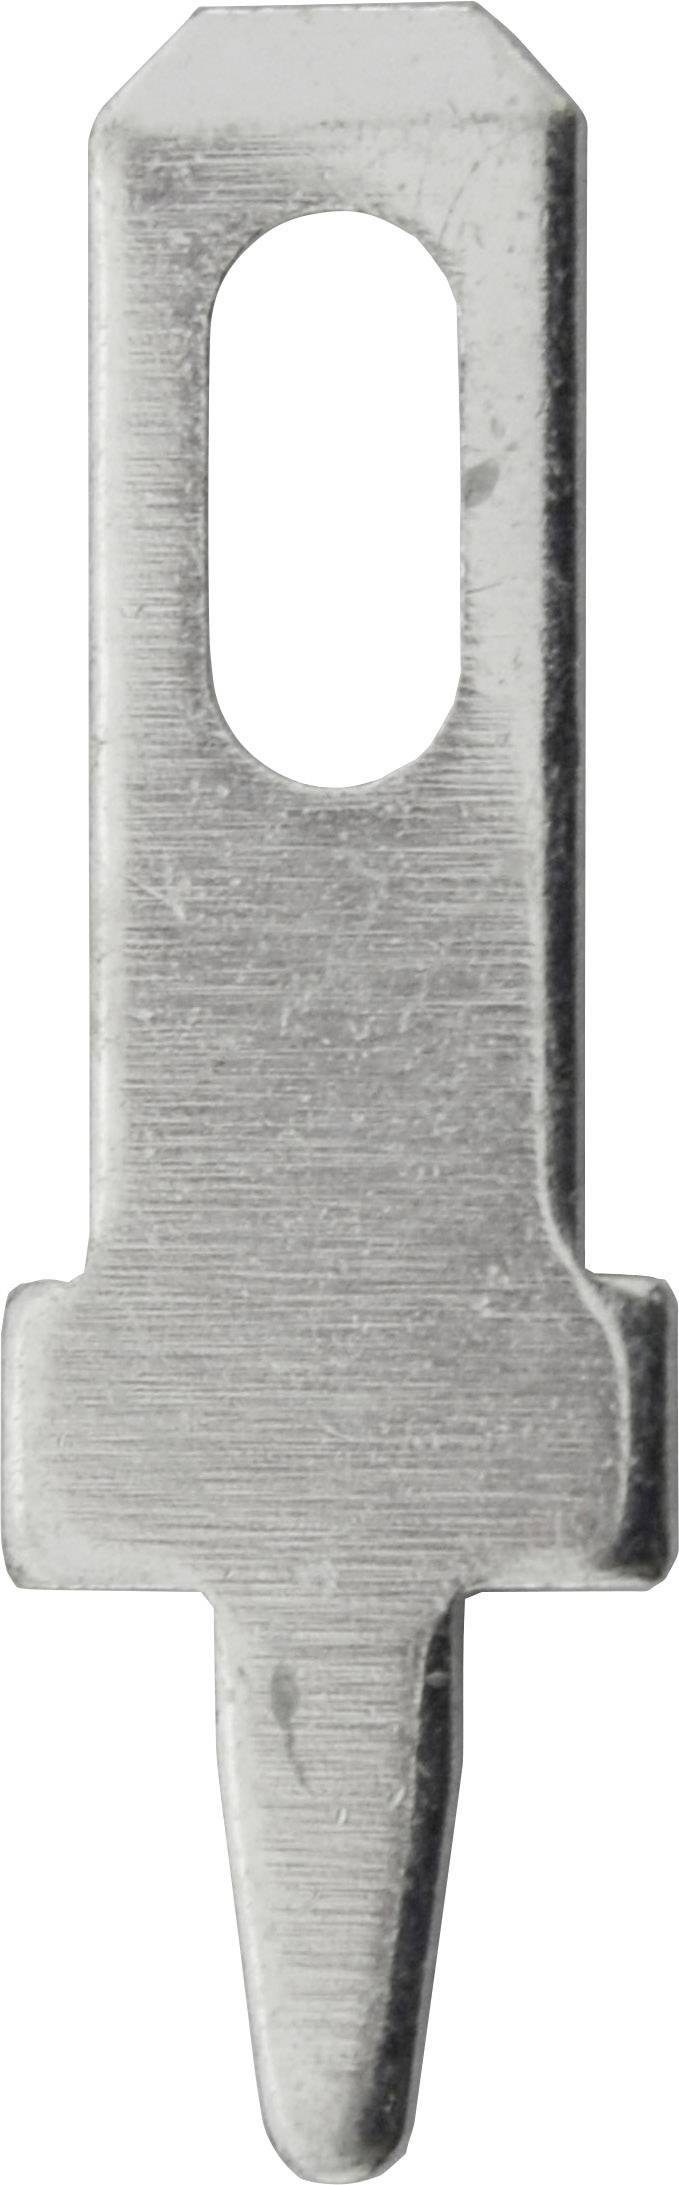 VOGT Steckzunge Steckbreite: 2.8 mm Steckdicke: 0.5 mm 180 ° Unisoliert Metall Vogt Verbindungstechn